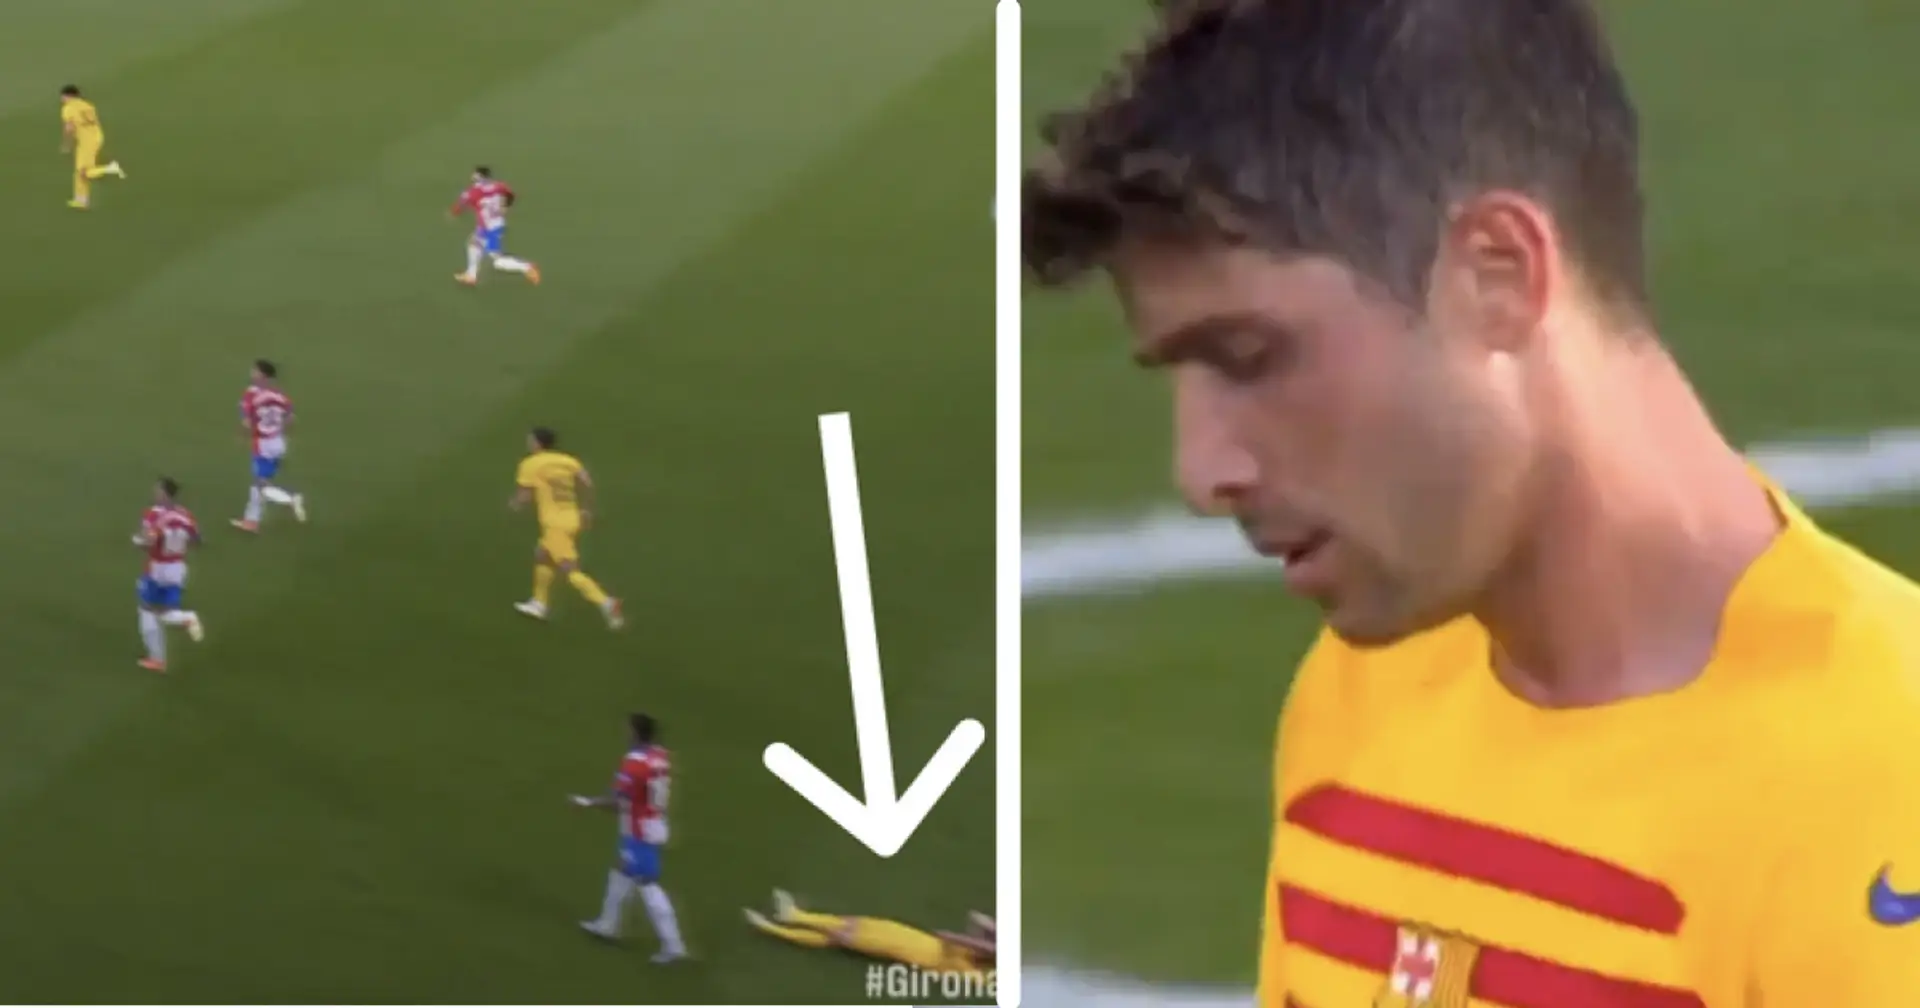 Visto: la reacción de Sergi Roberto ante su error en el gol ante el Girona